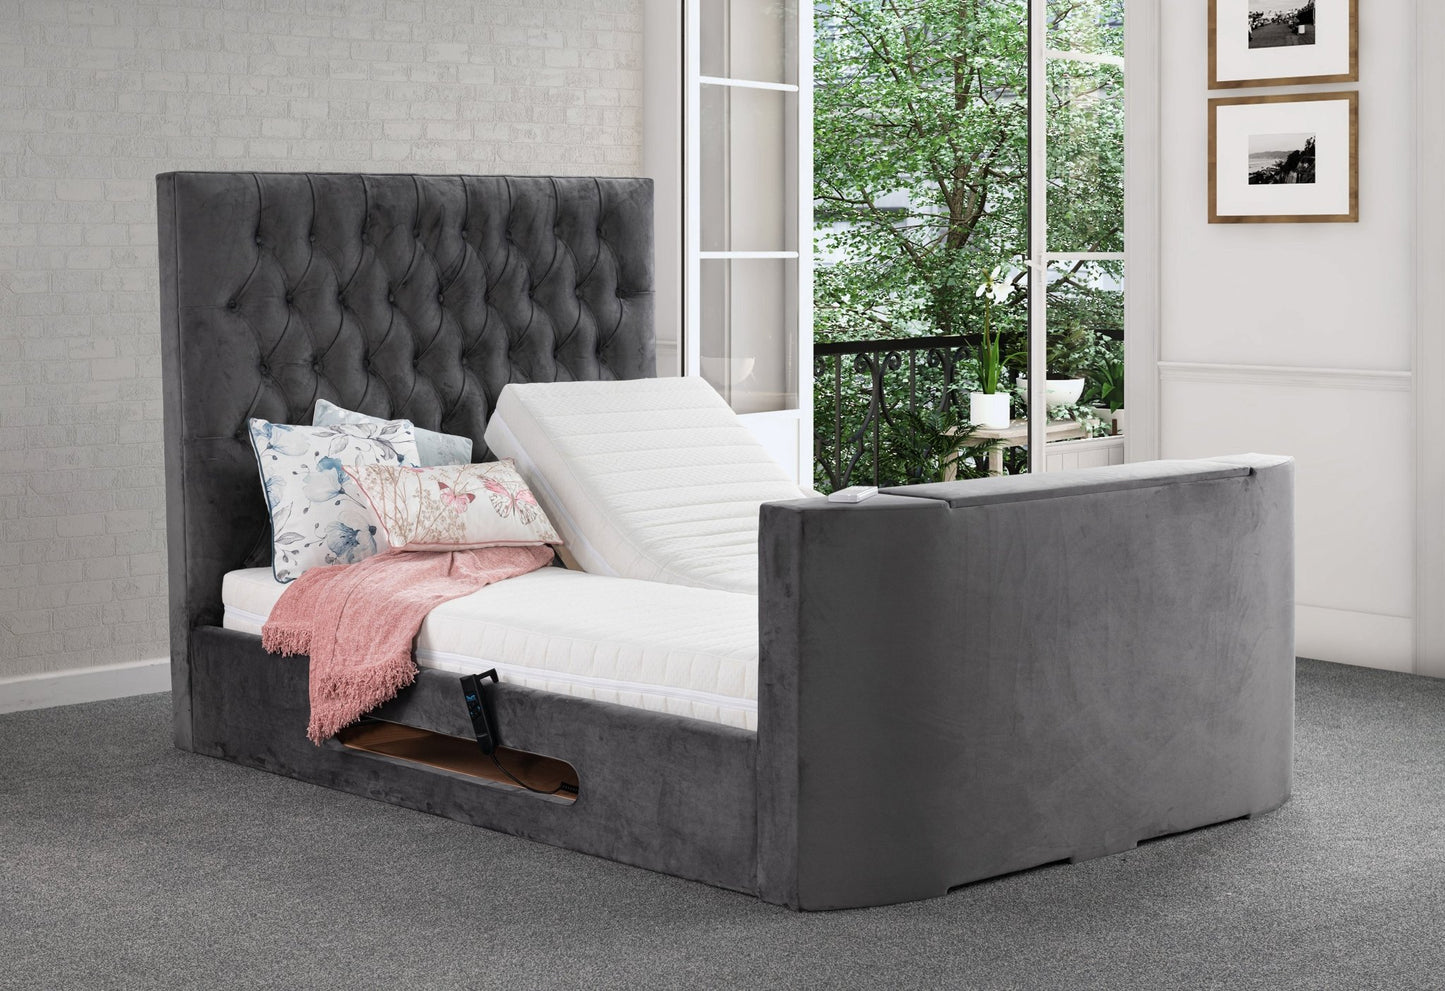 Loren Adjustable Lifestyle TV Bed frame - Sweet Dreams - TV Beds Northwest - adjustabletvbed - choose your colour tvbed